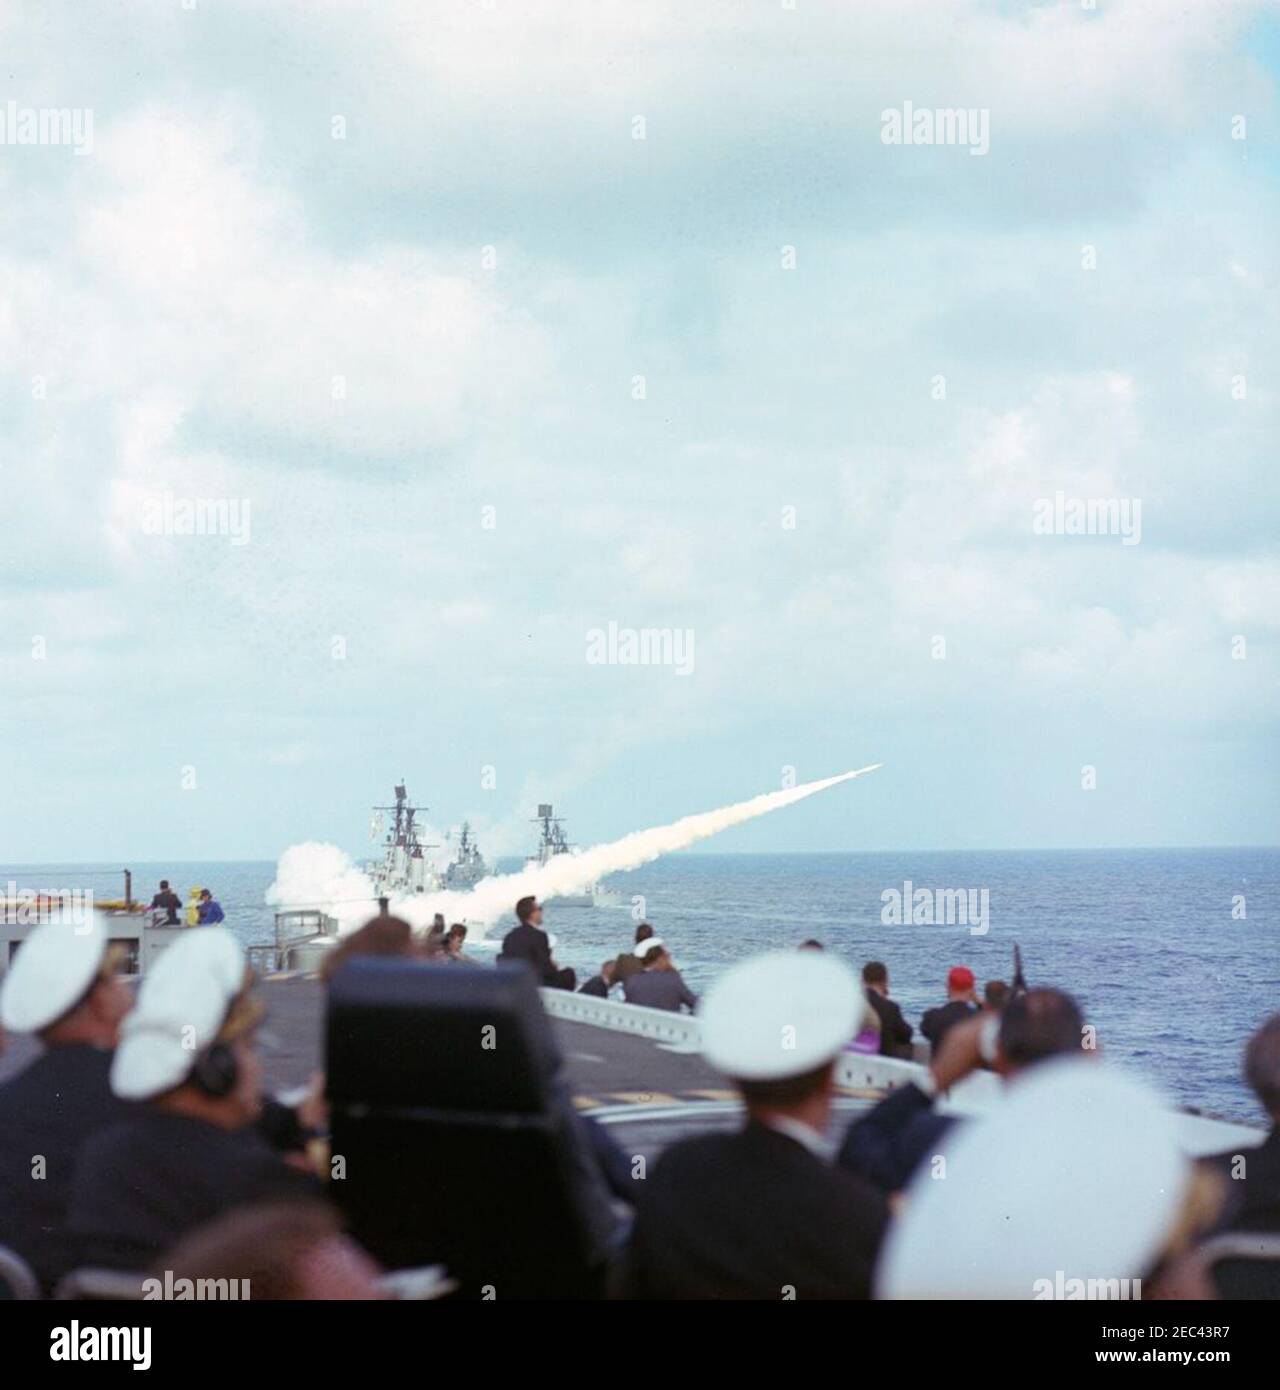 Voyage aux États de l'Ouest : visite de la flotte du Pacifique, le président Kennedy à bord de l'USS Kitty Hawk, 5:00. Le président John F. Kennedy (assis sur la chaise à dossier haut à gauche) et d'autres invités distingués regardent des démonstrations guidées de missiles depuis le pont de vol du porte-avions USS Kitty Hawk (CVA-63), lors d'une visite à la flotte du Pacifique des États-Unis au large de la côte de San Diego, en Californie. Banque D'Images